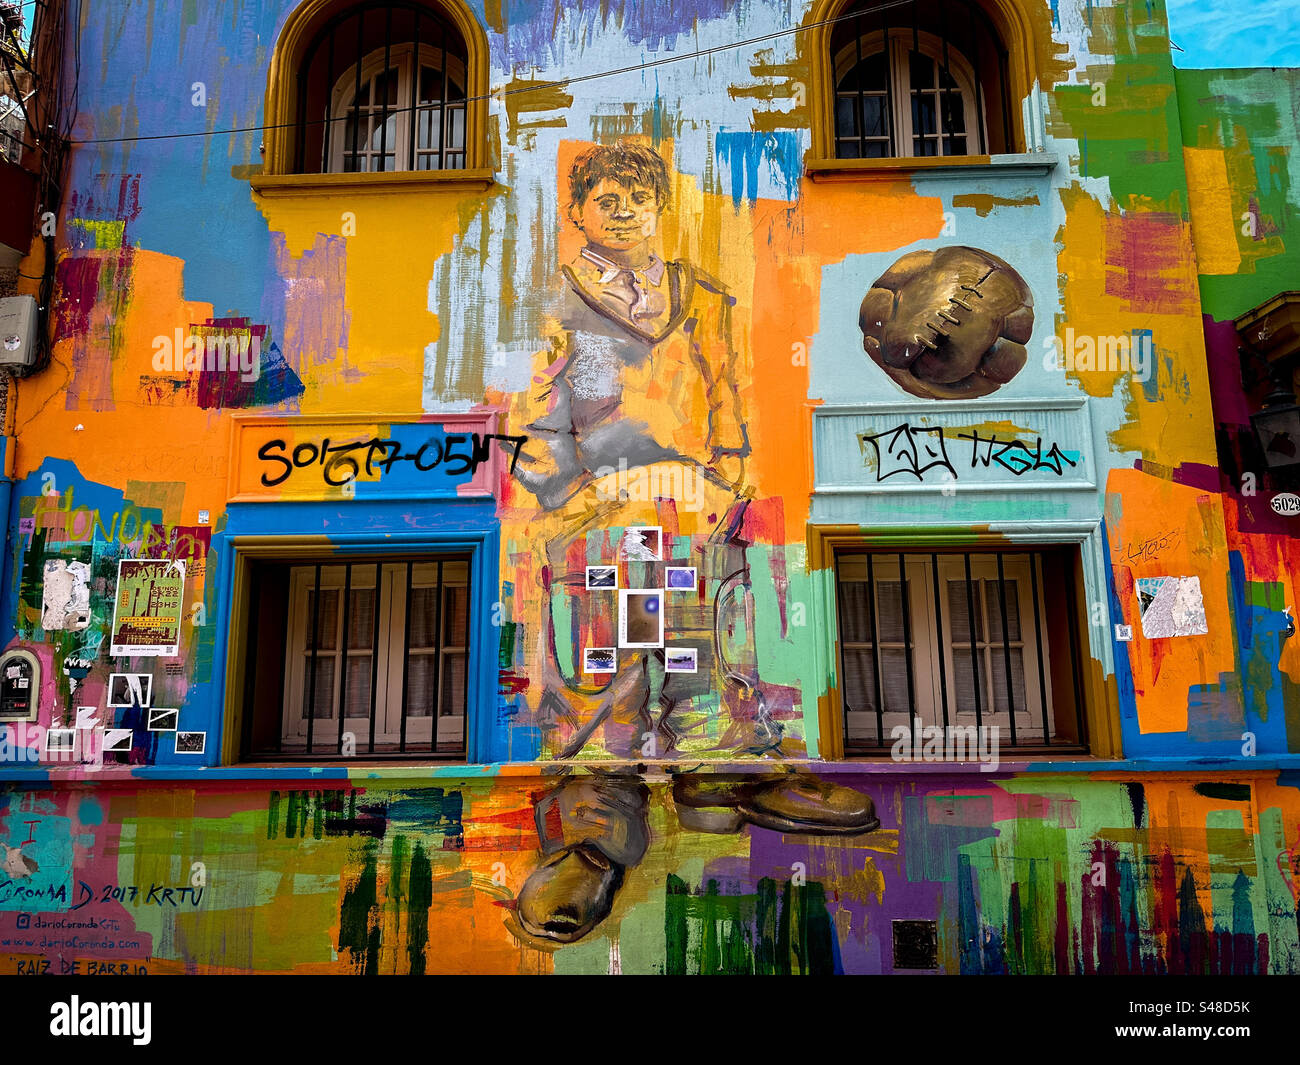 Farbenfrohe Wandgemälde im kunstvollen Viertel Palermo Viejo, einem der ältesten Viertel Palermos, gespickt mit schicken Geschäften und trendigen Restaurants. Buenos Aires, Argentinien Stockfoto